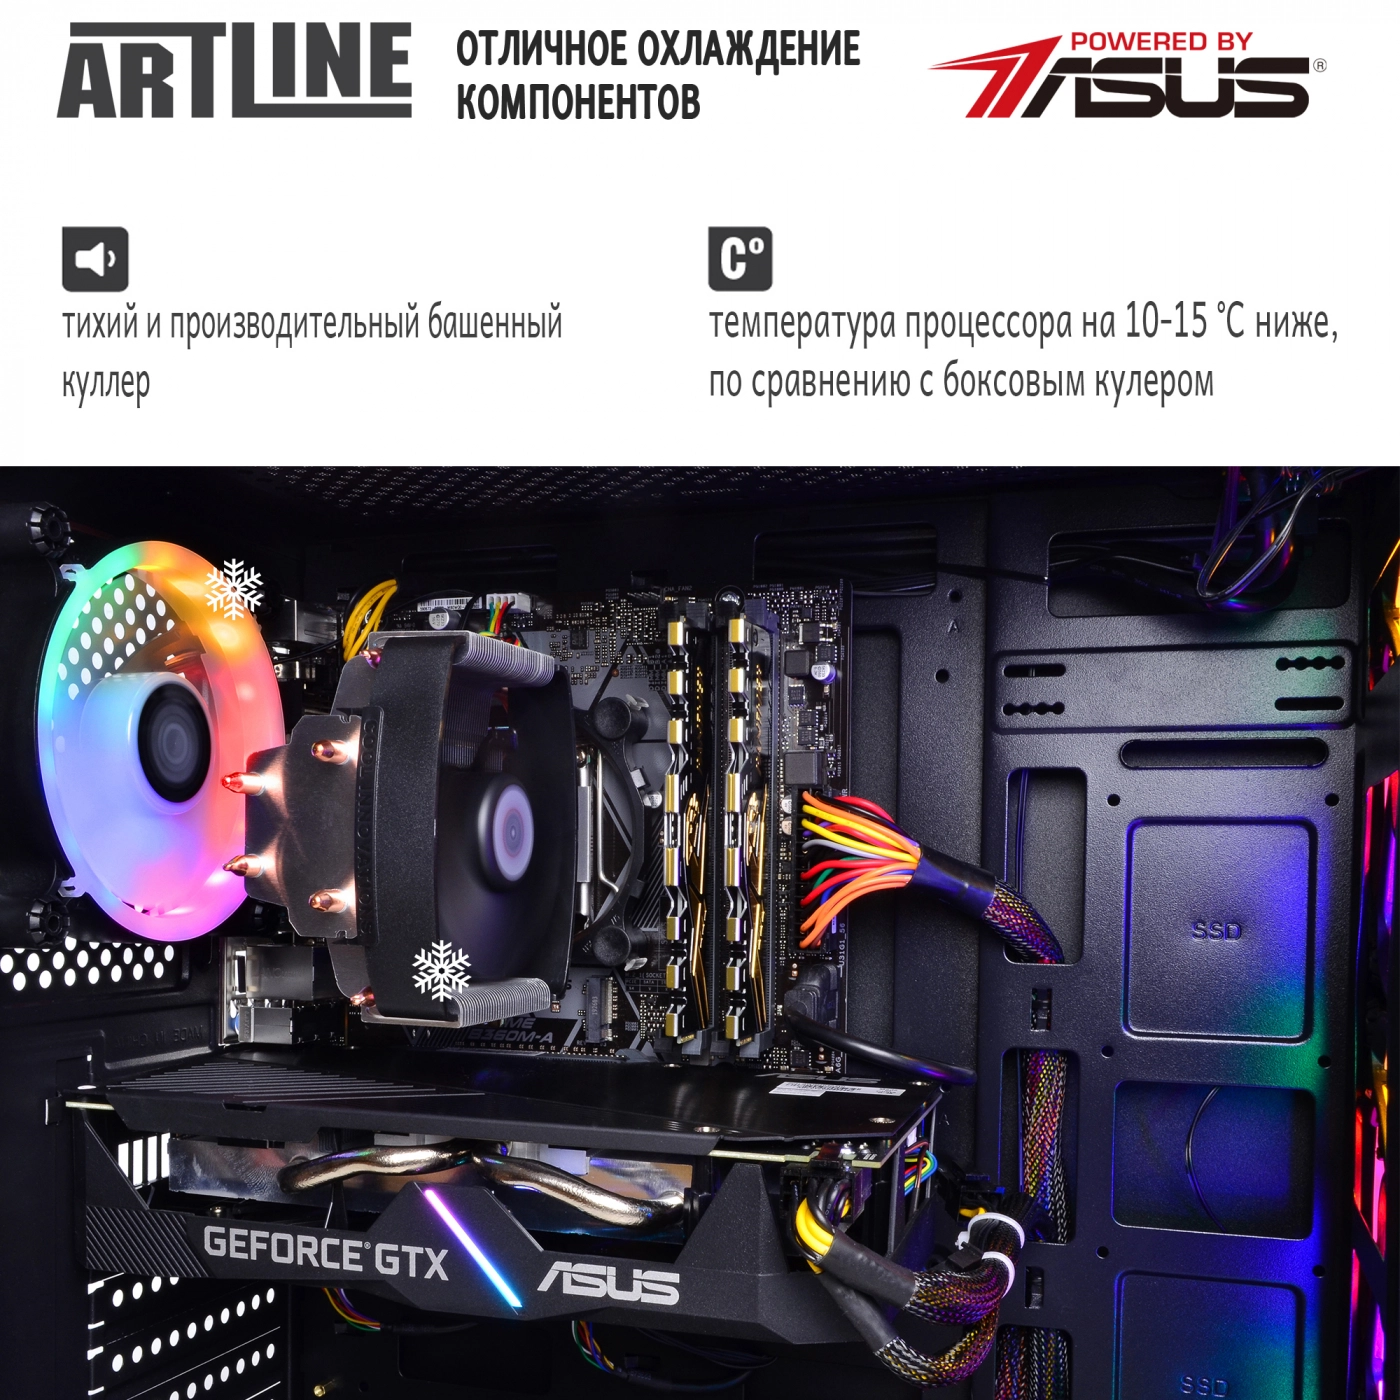 Купить Компьютер ARTLINE Gaming X39v43 - фото 7